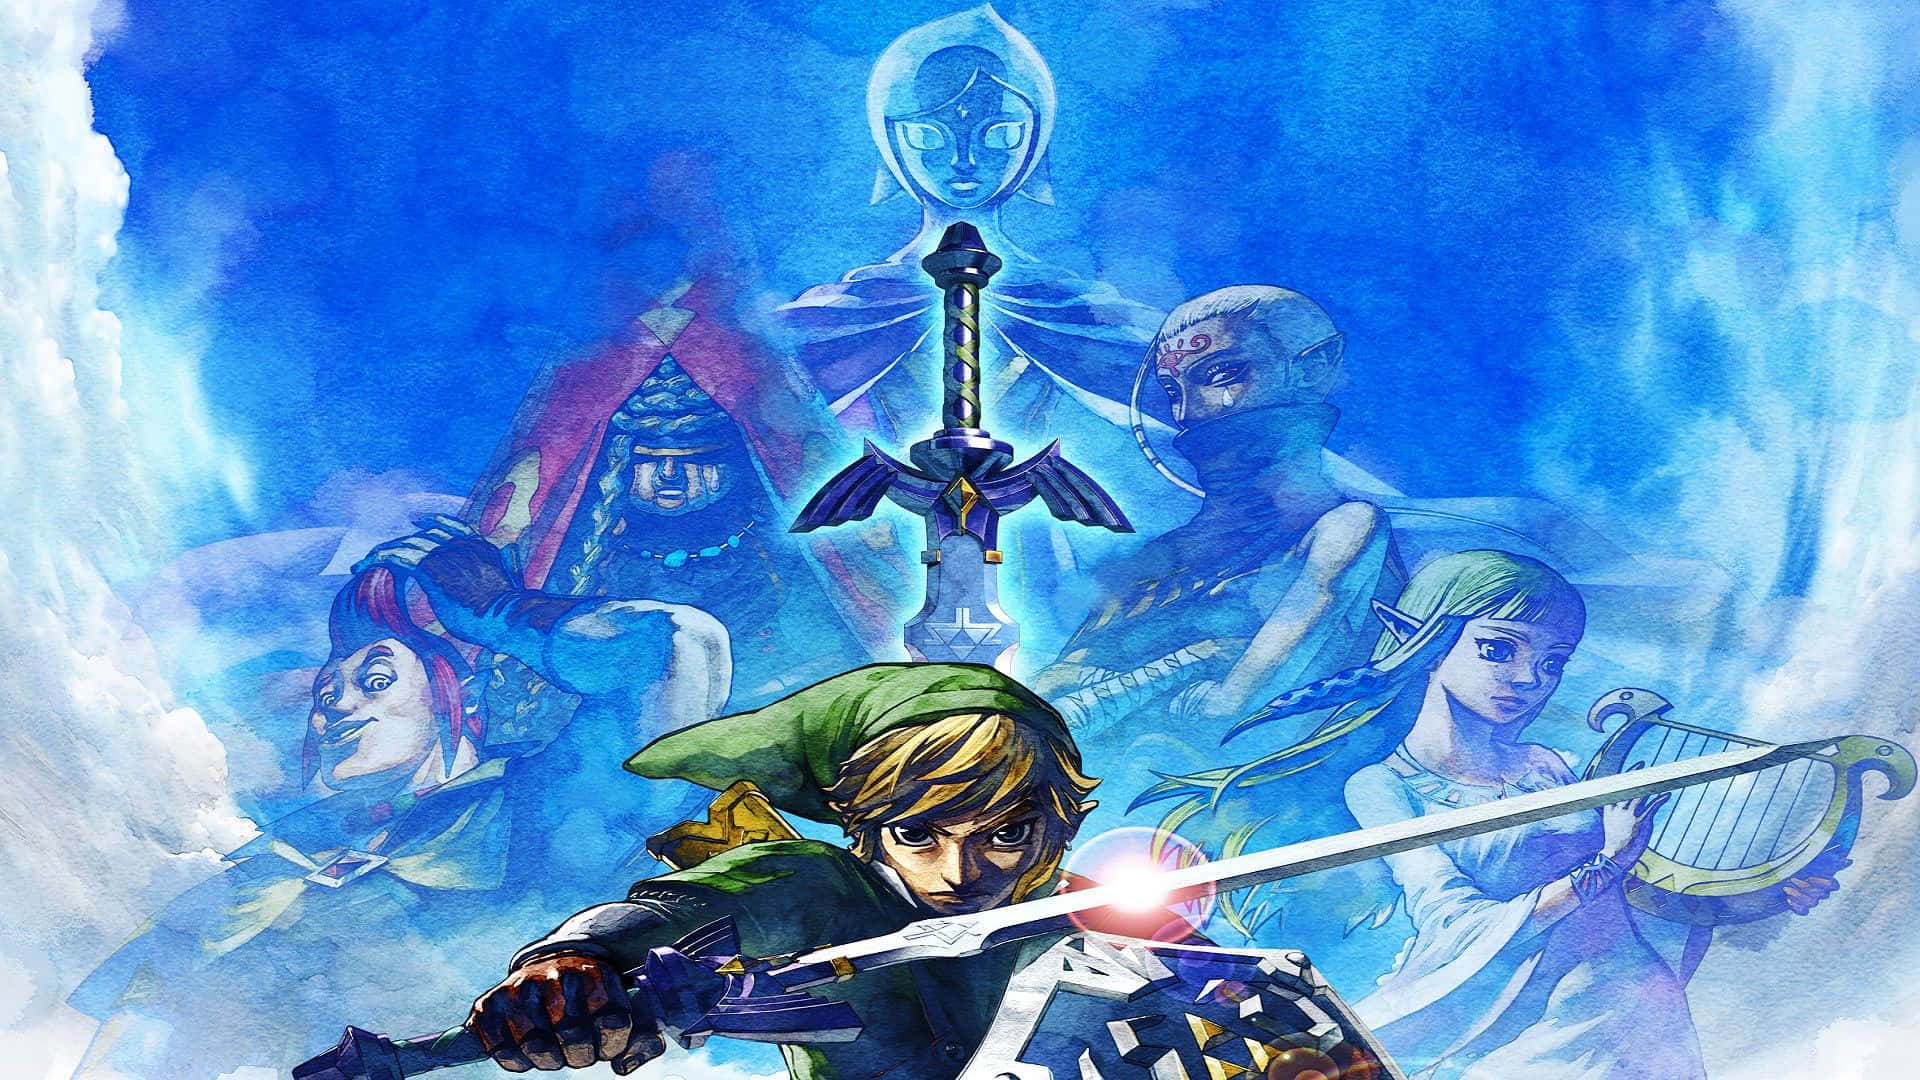 Link battling Ghirahim in The Legend of Zelda: Skyward Sword Wallpaper